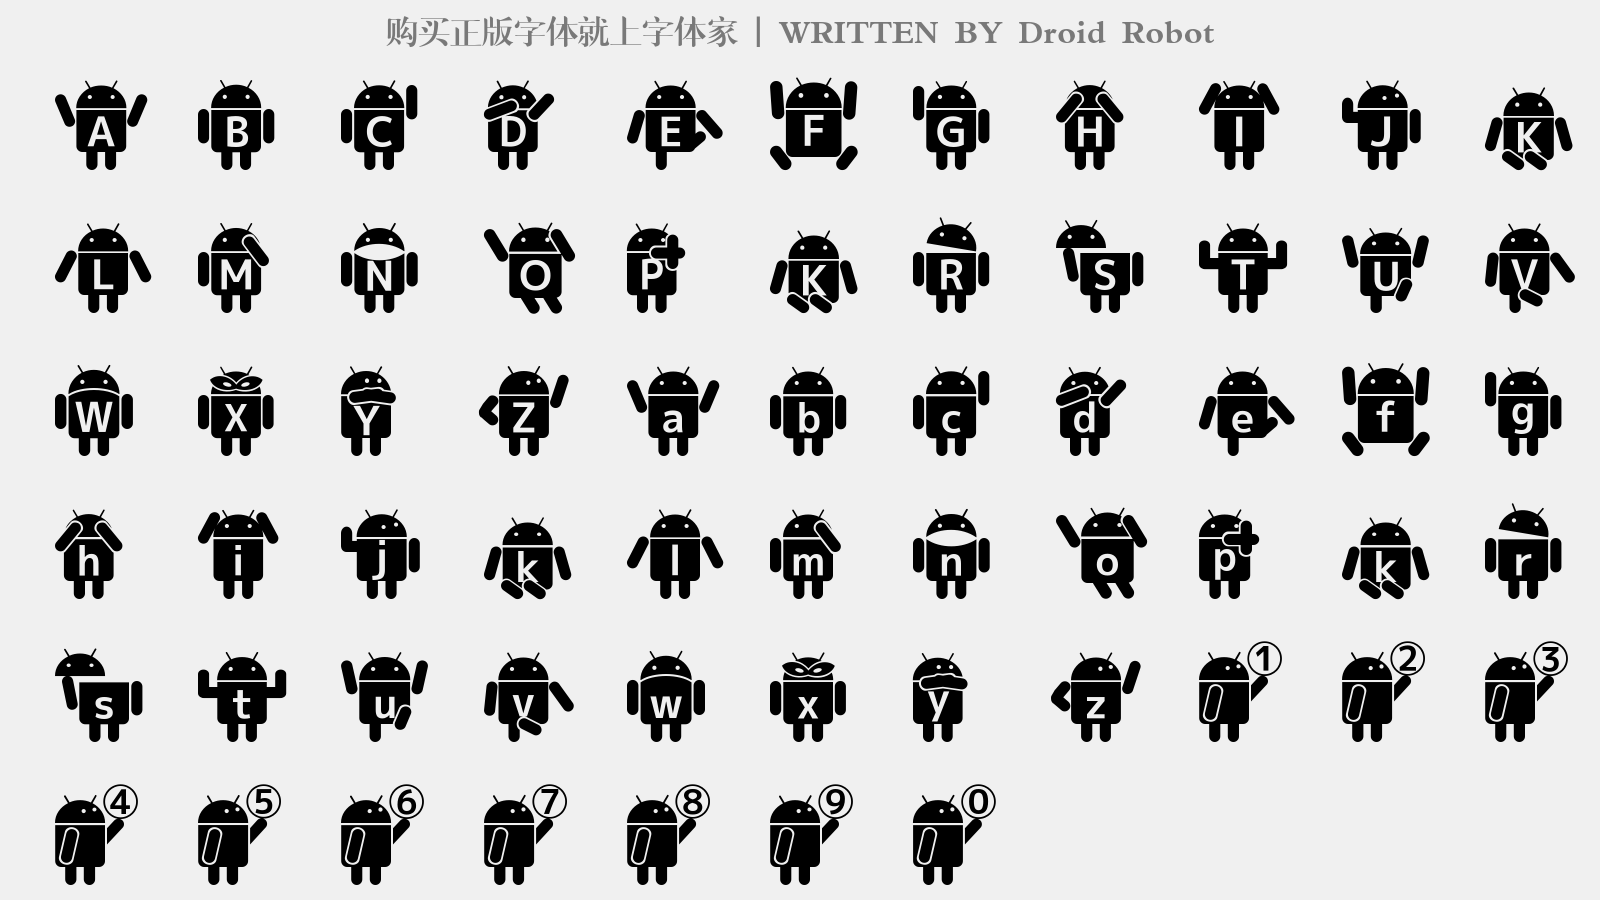 Droid Robot - 大写字母/小写字母/数字